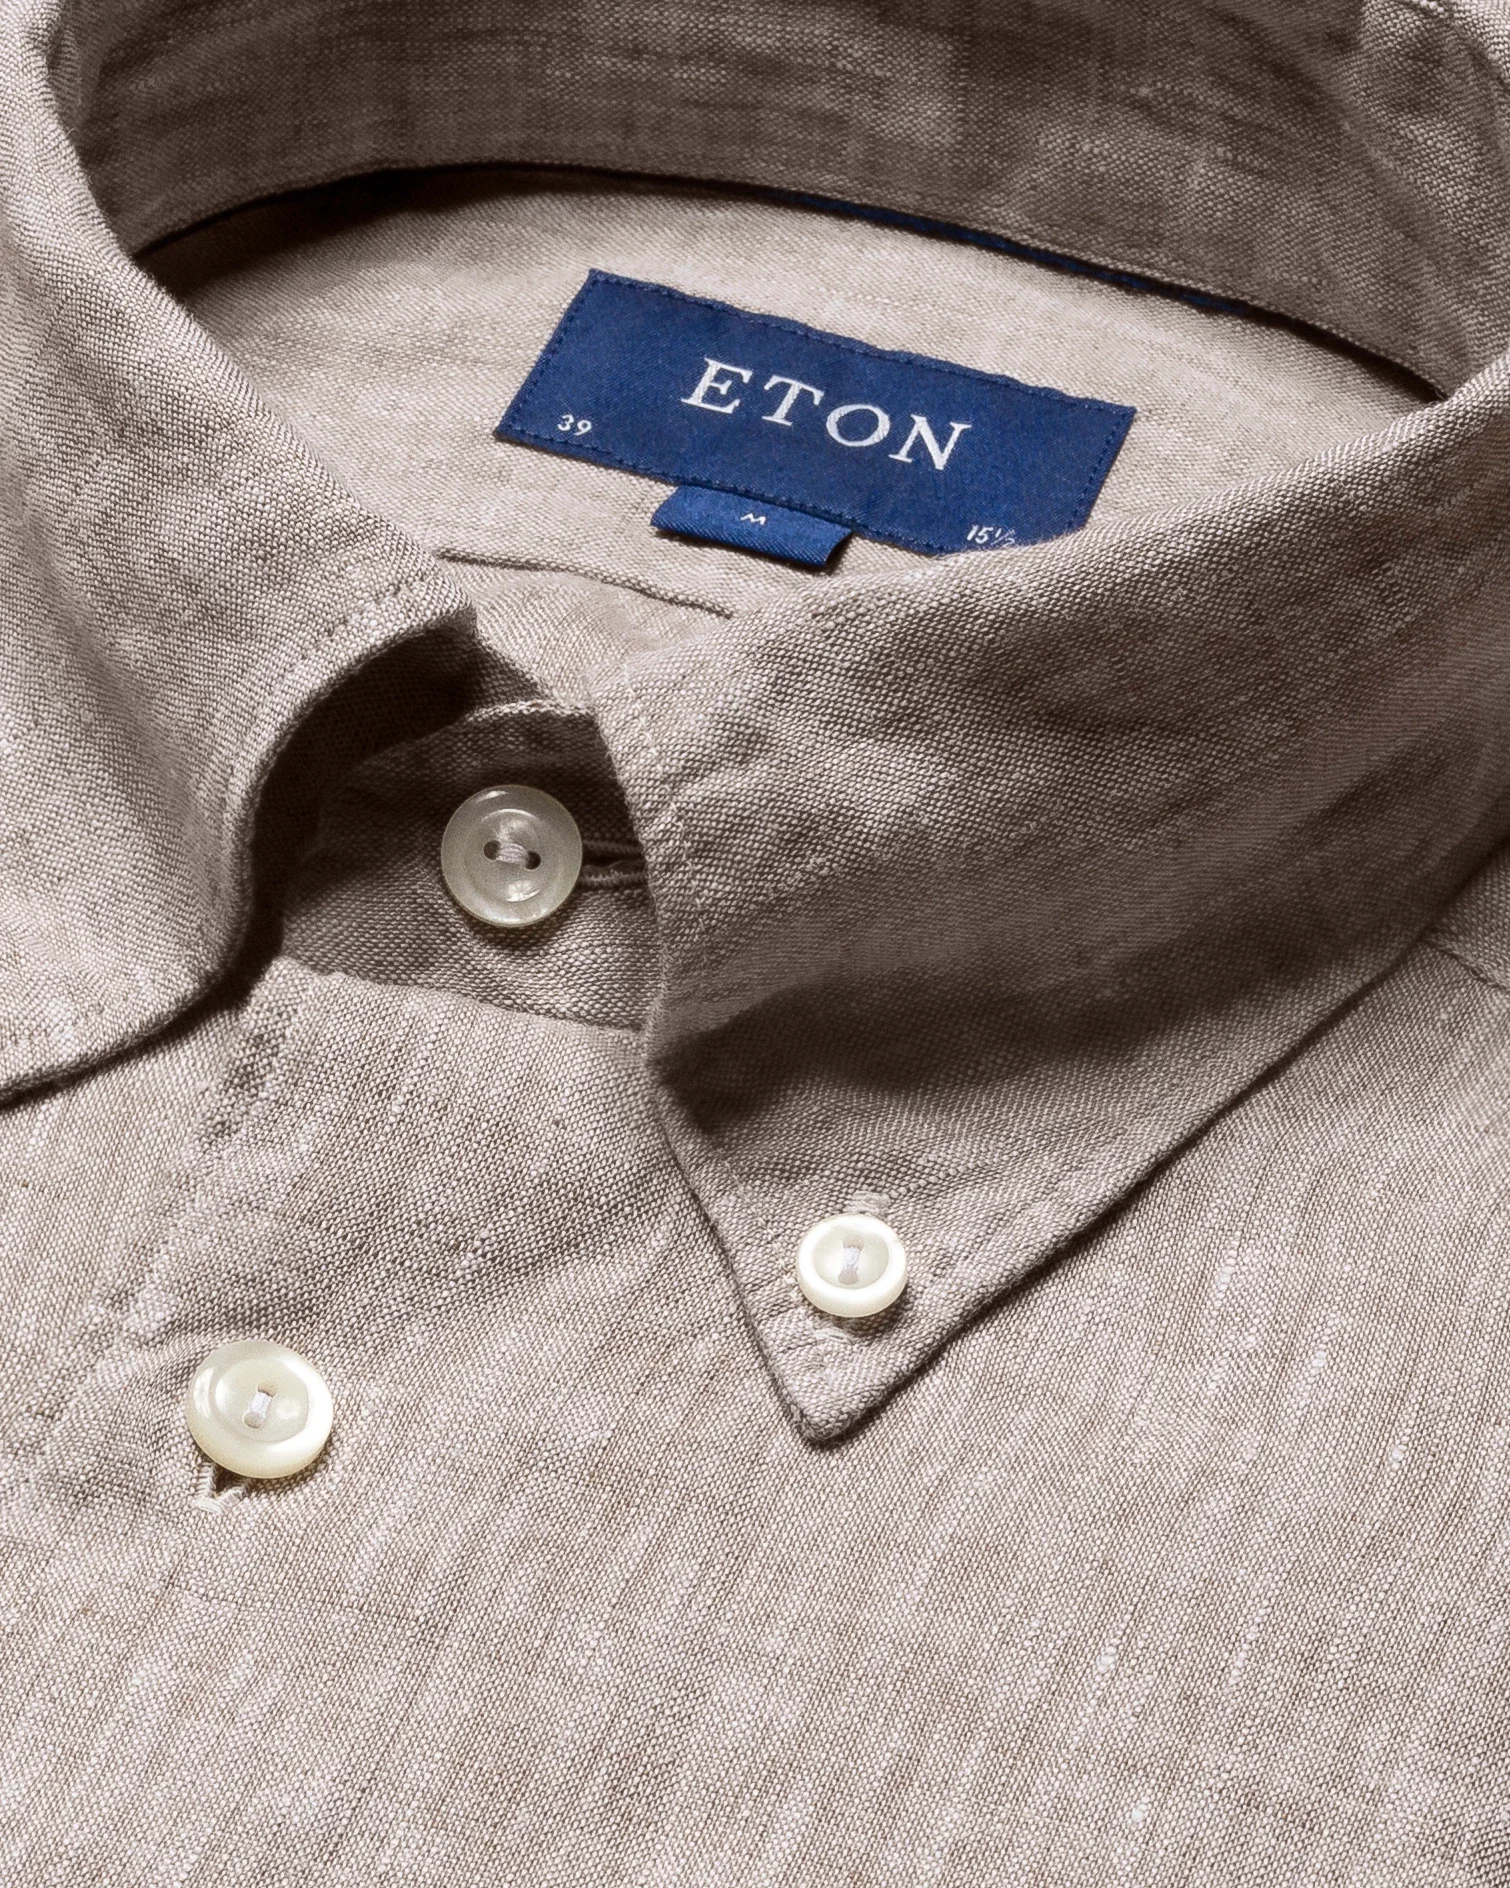 Eton - brown linen shirt short sleeve